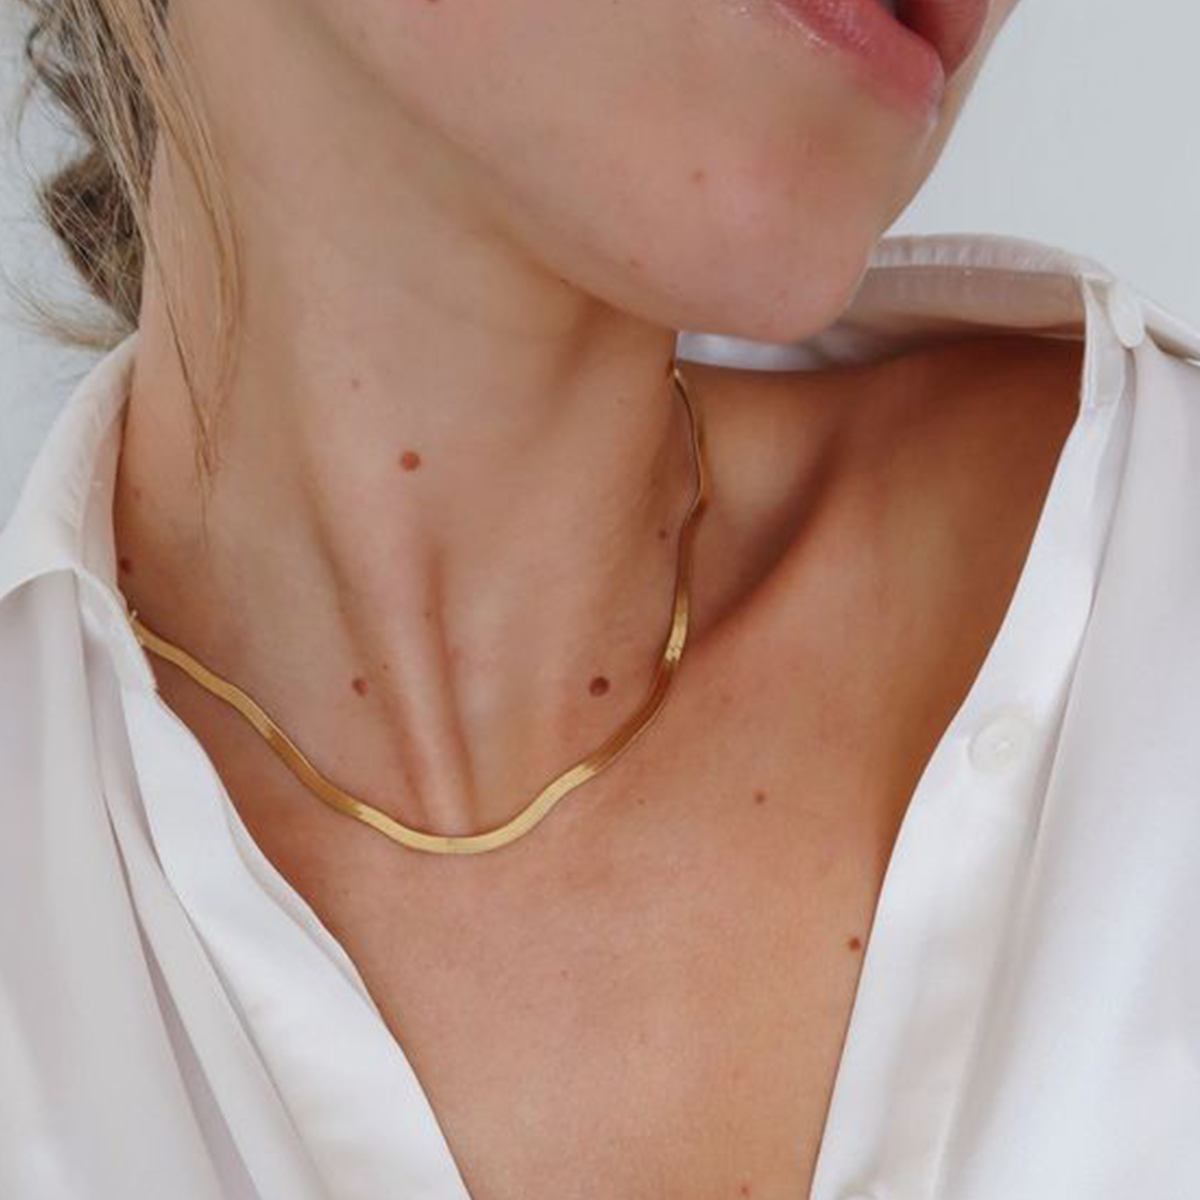 Fancy Herringbone Gold Chain Necklace | Alexandra Marks Jewelry